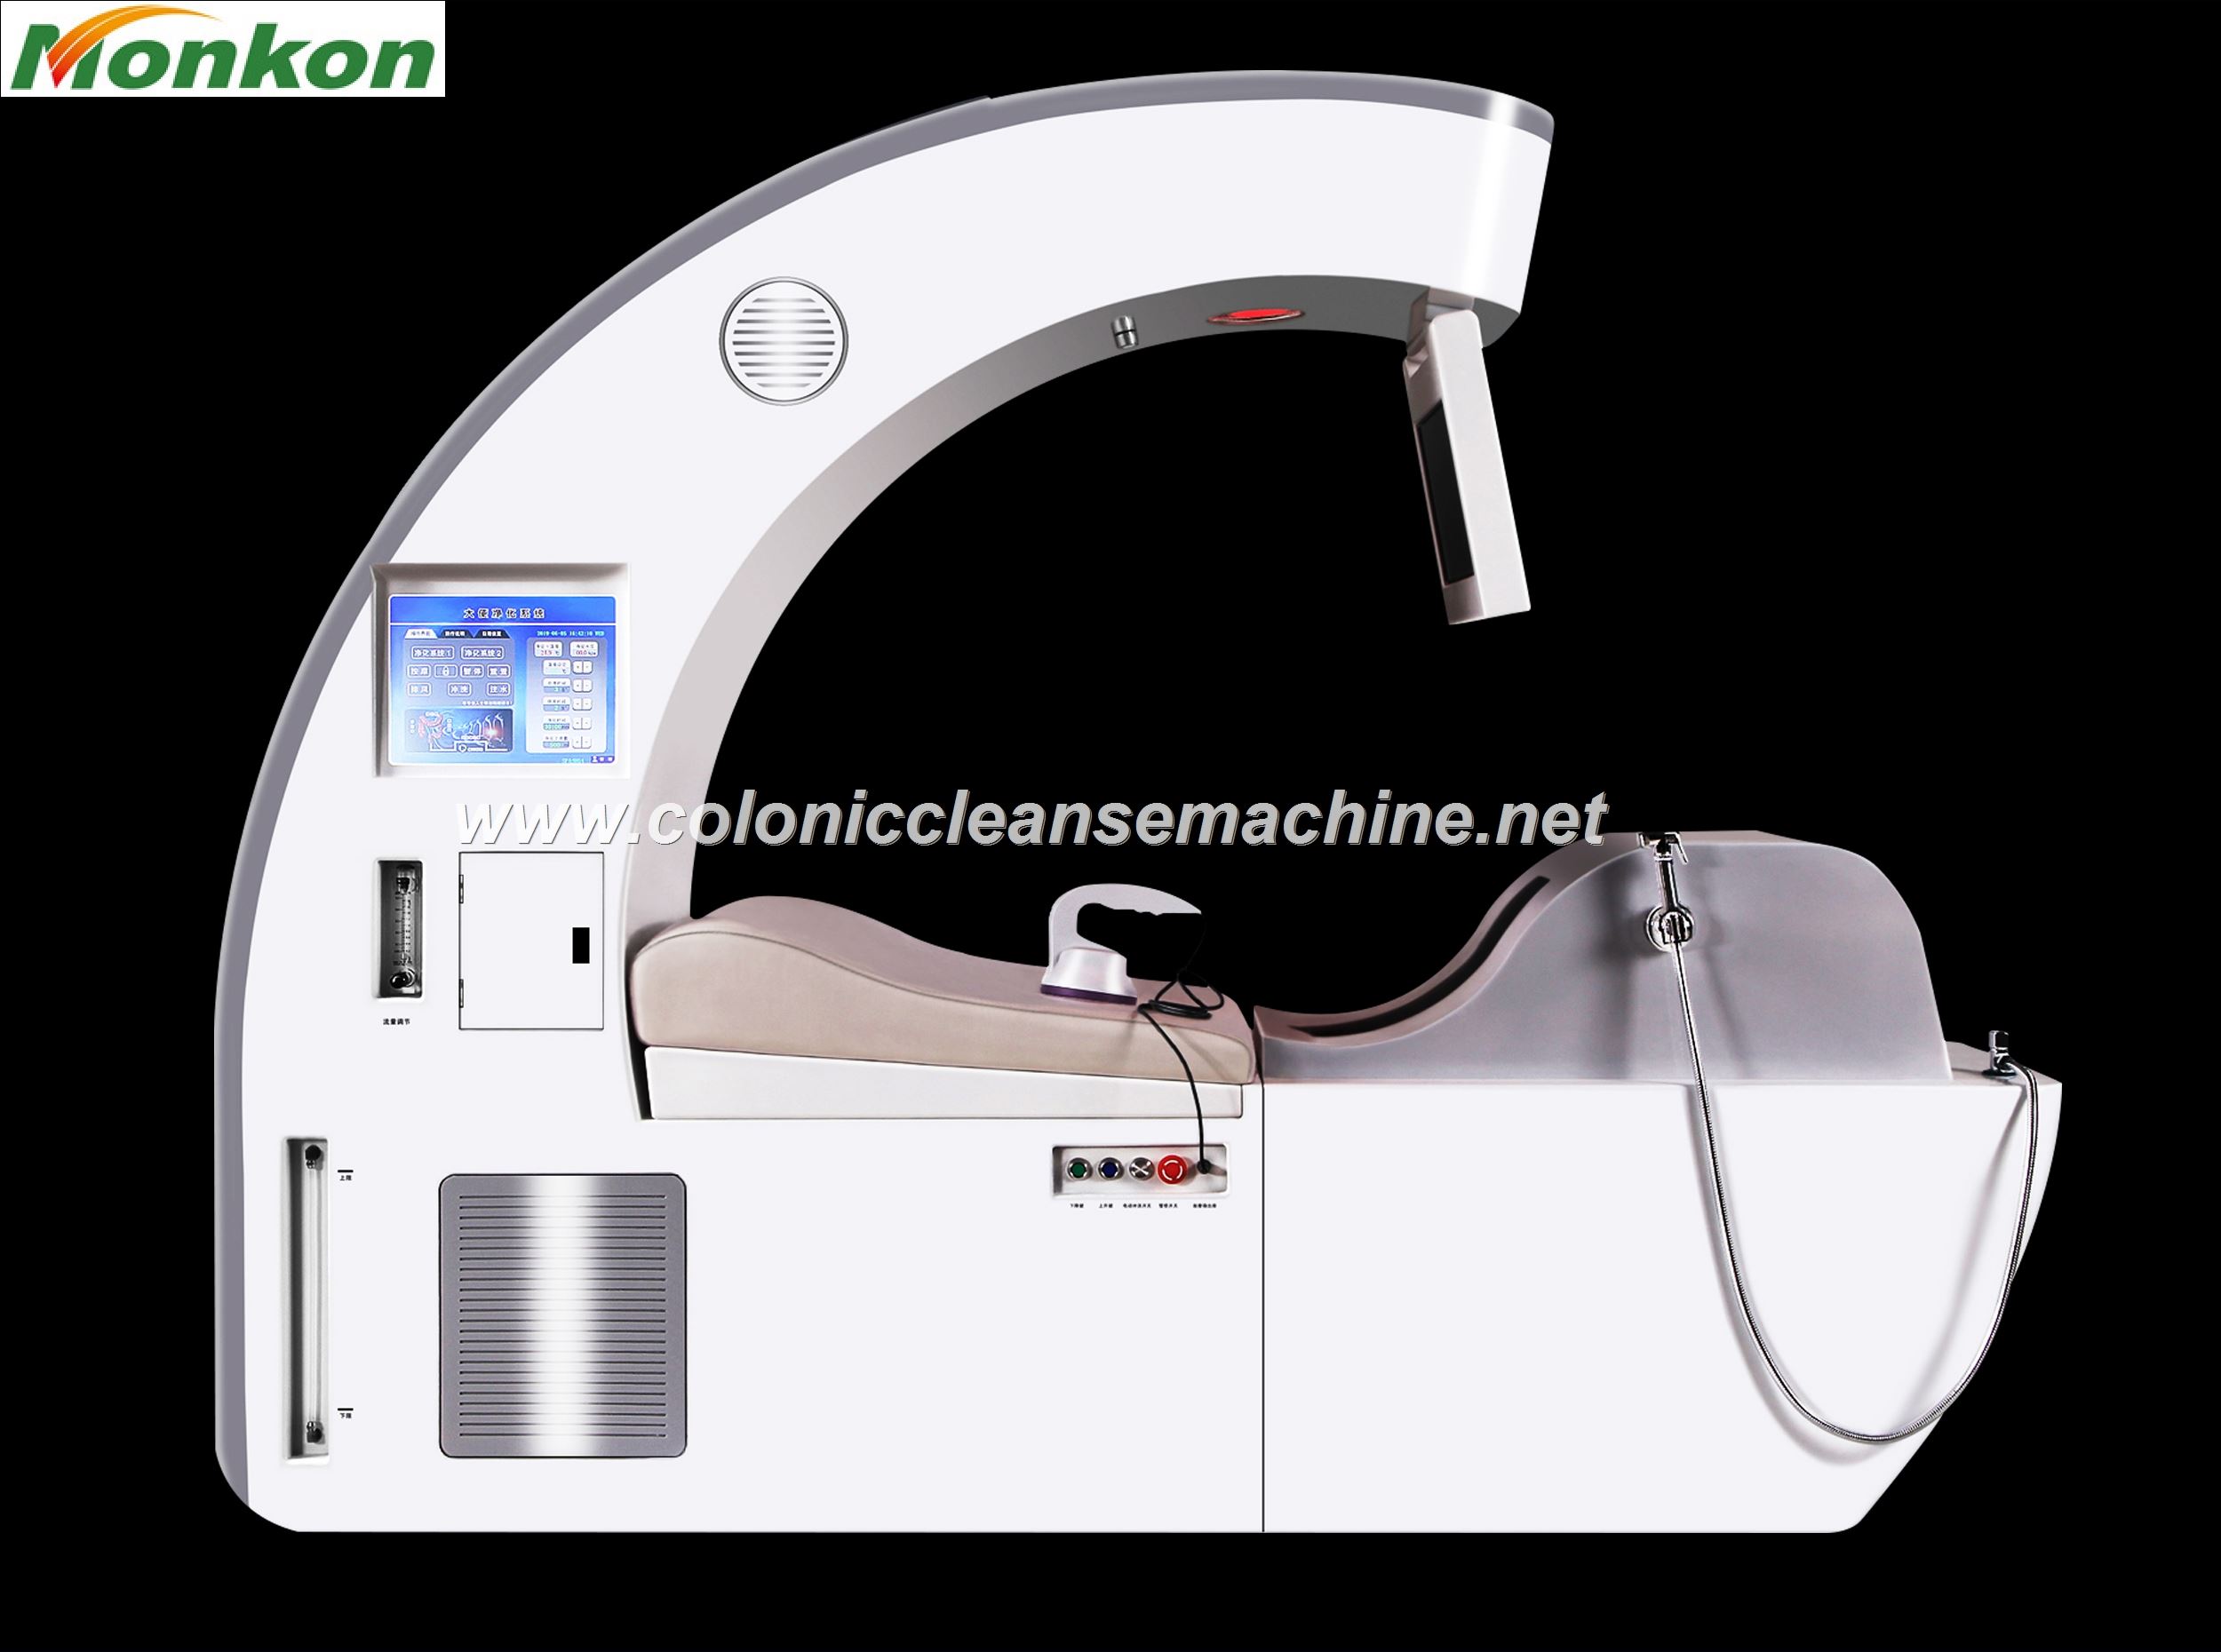 Colon Cleanse Machine Dr